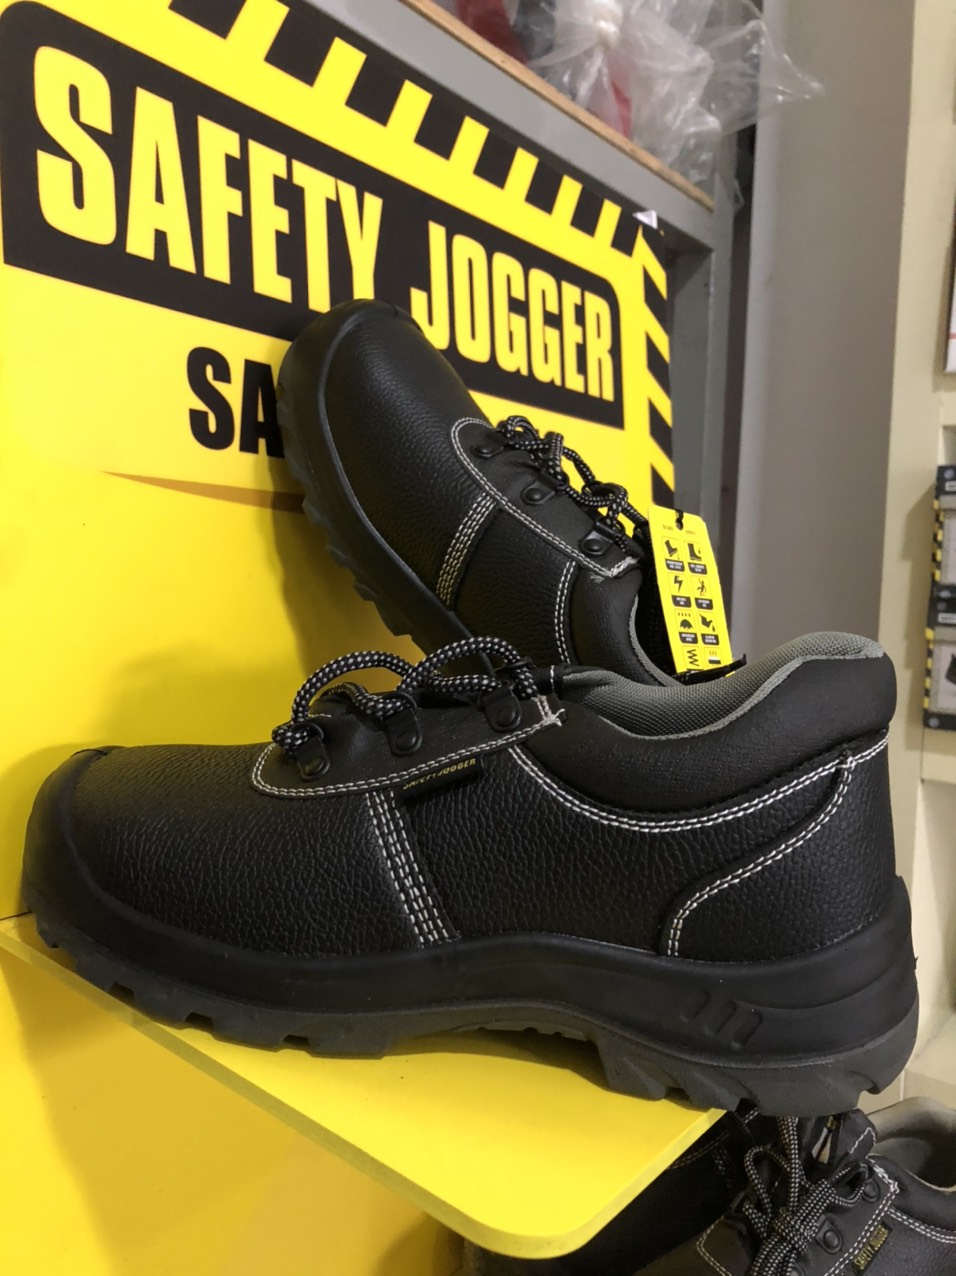 Giày Bảo Hộ Safety Jogger Bestrun